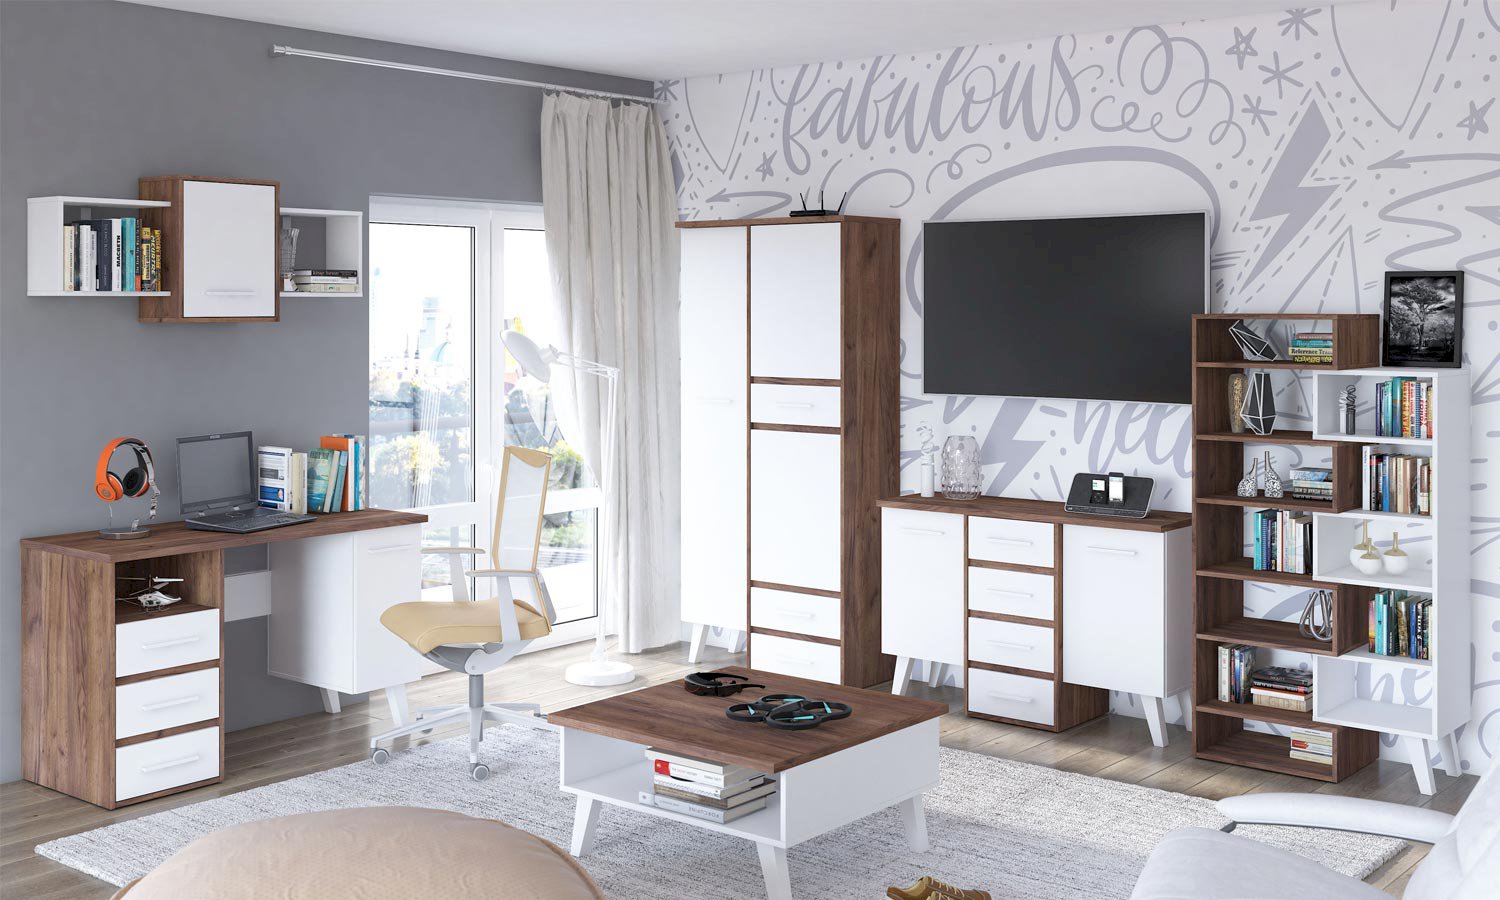 Biurka – styl skandynawski w pokoju młodzieżowym i domowym gabinecie